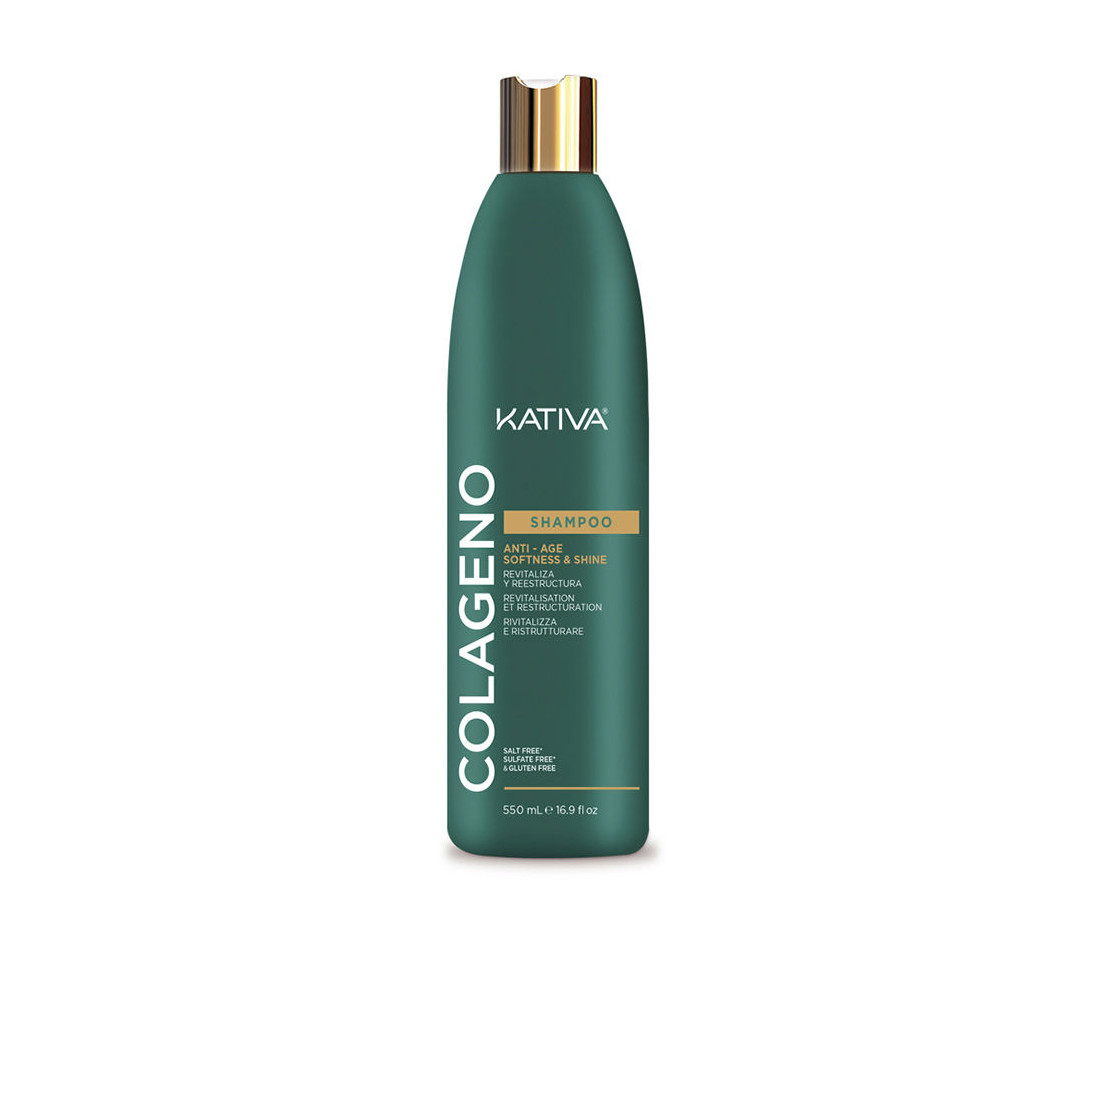 KOLLAGEN-Shampoo 550 ml